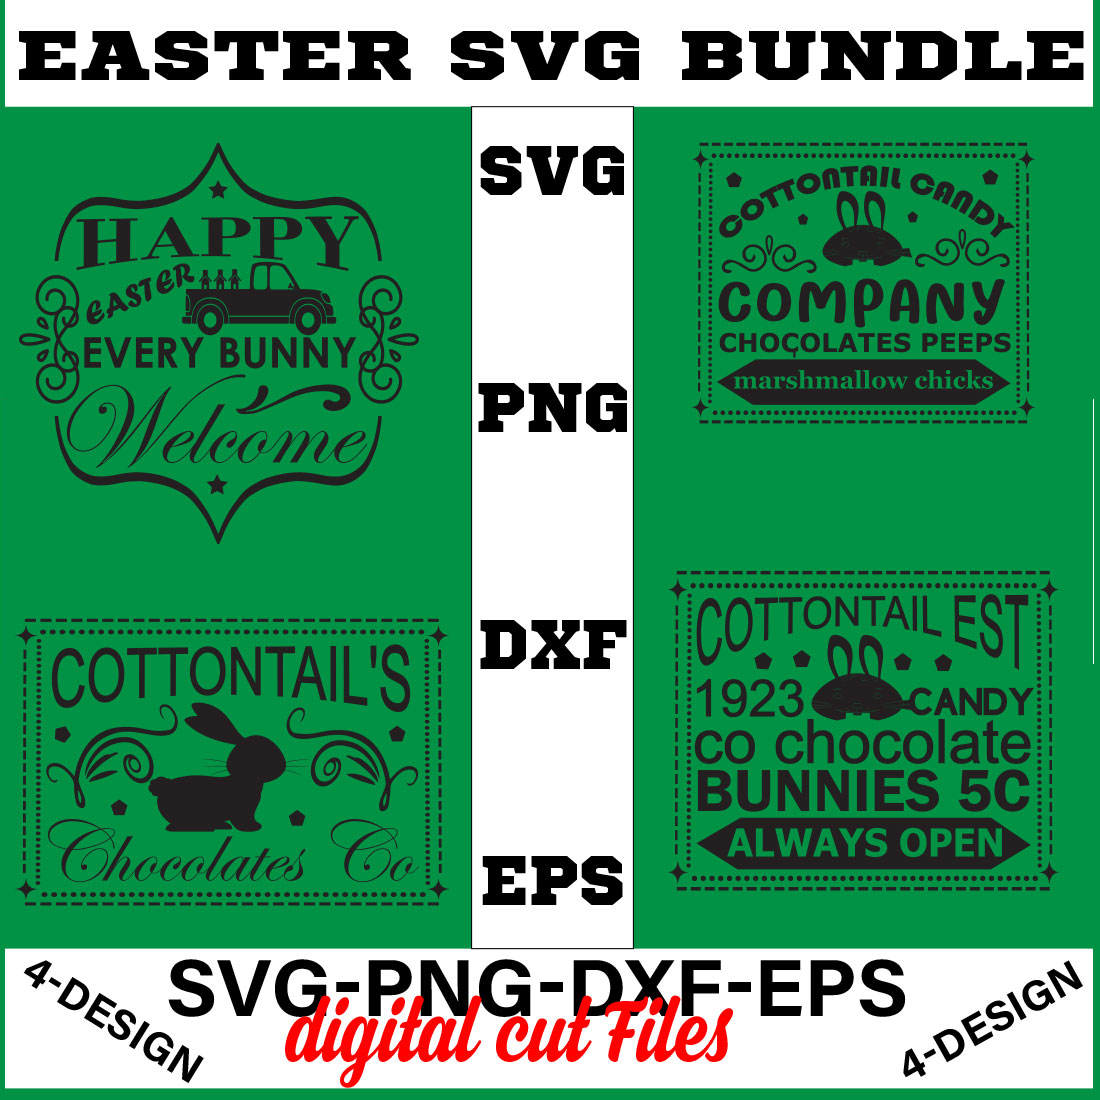 Happy Easter SVG Bundle, Easter SVG, Easter quotes, Easter Bunny svg, Easter Egg svg, Volume-10 cover image.